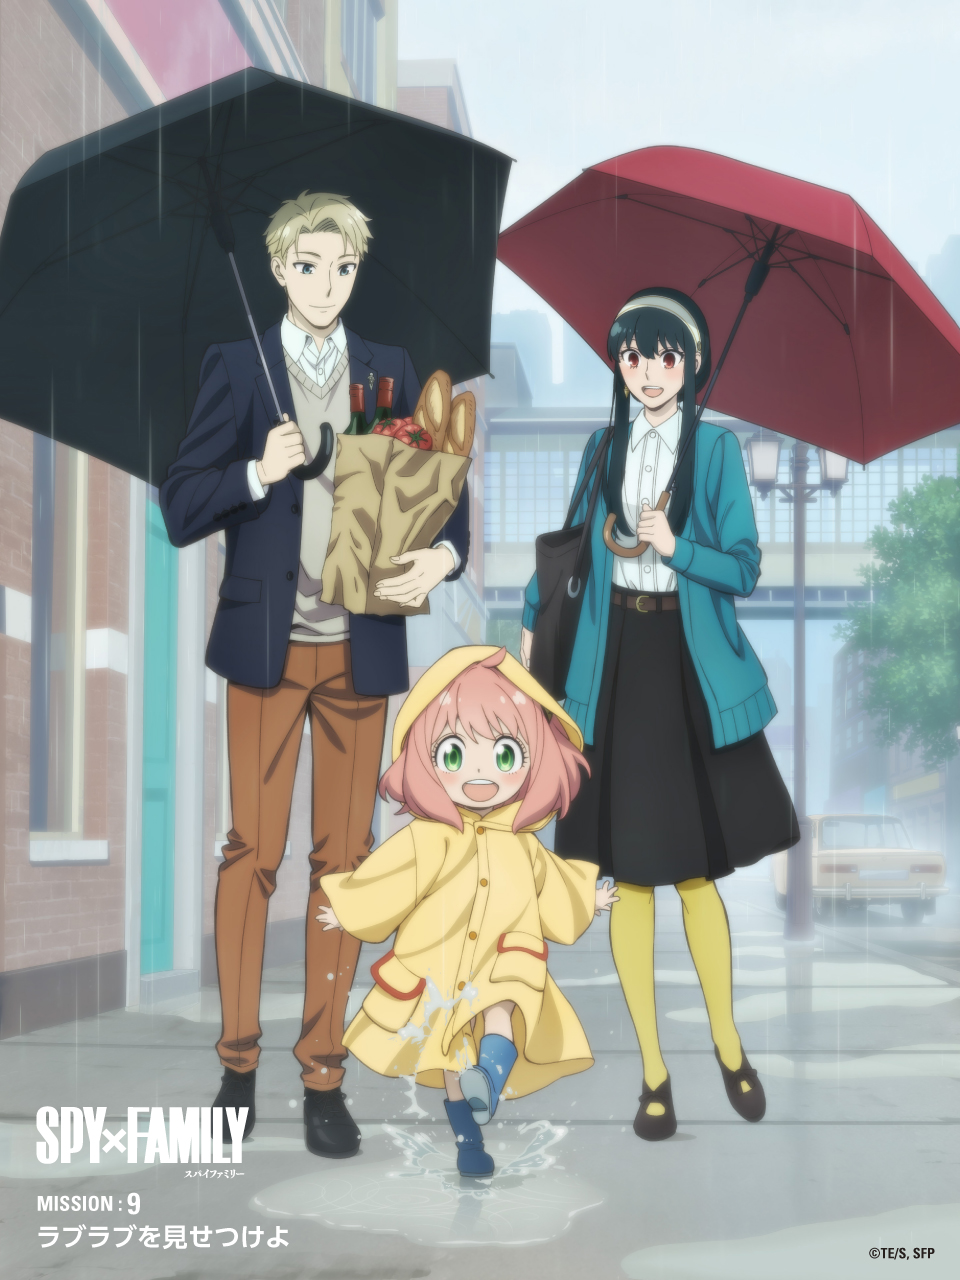 Anime SPY x FAMILY tập 9 thấm đượm bài học sâu sắc về hạnh phúc gia đình - Ảnh 4.